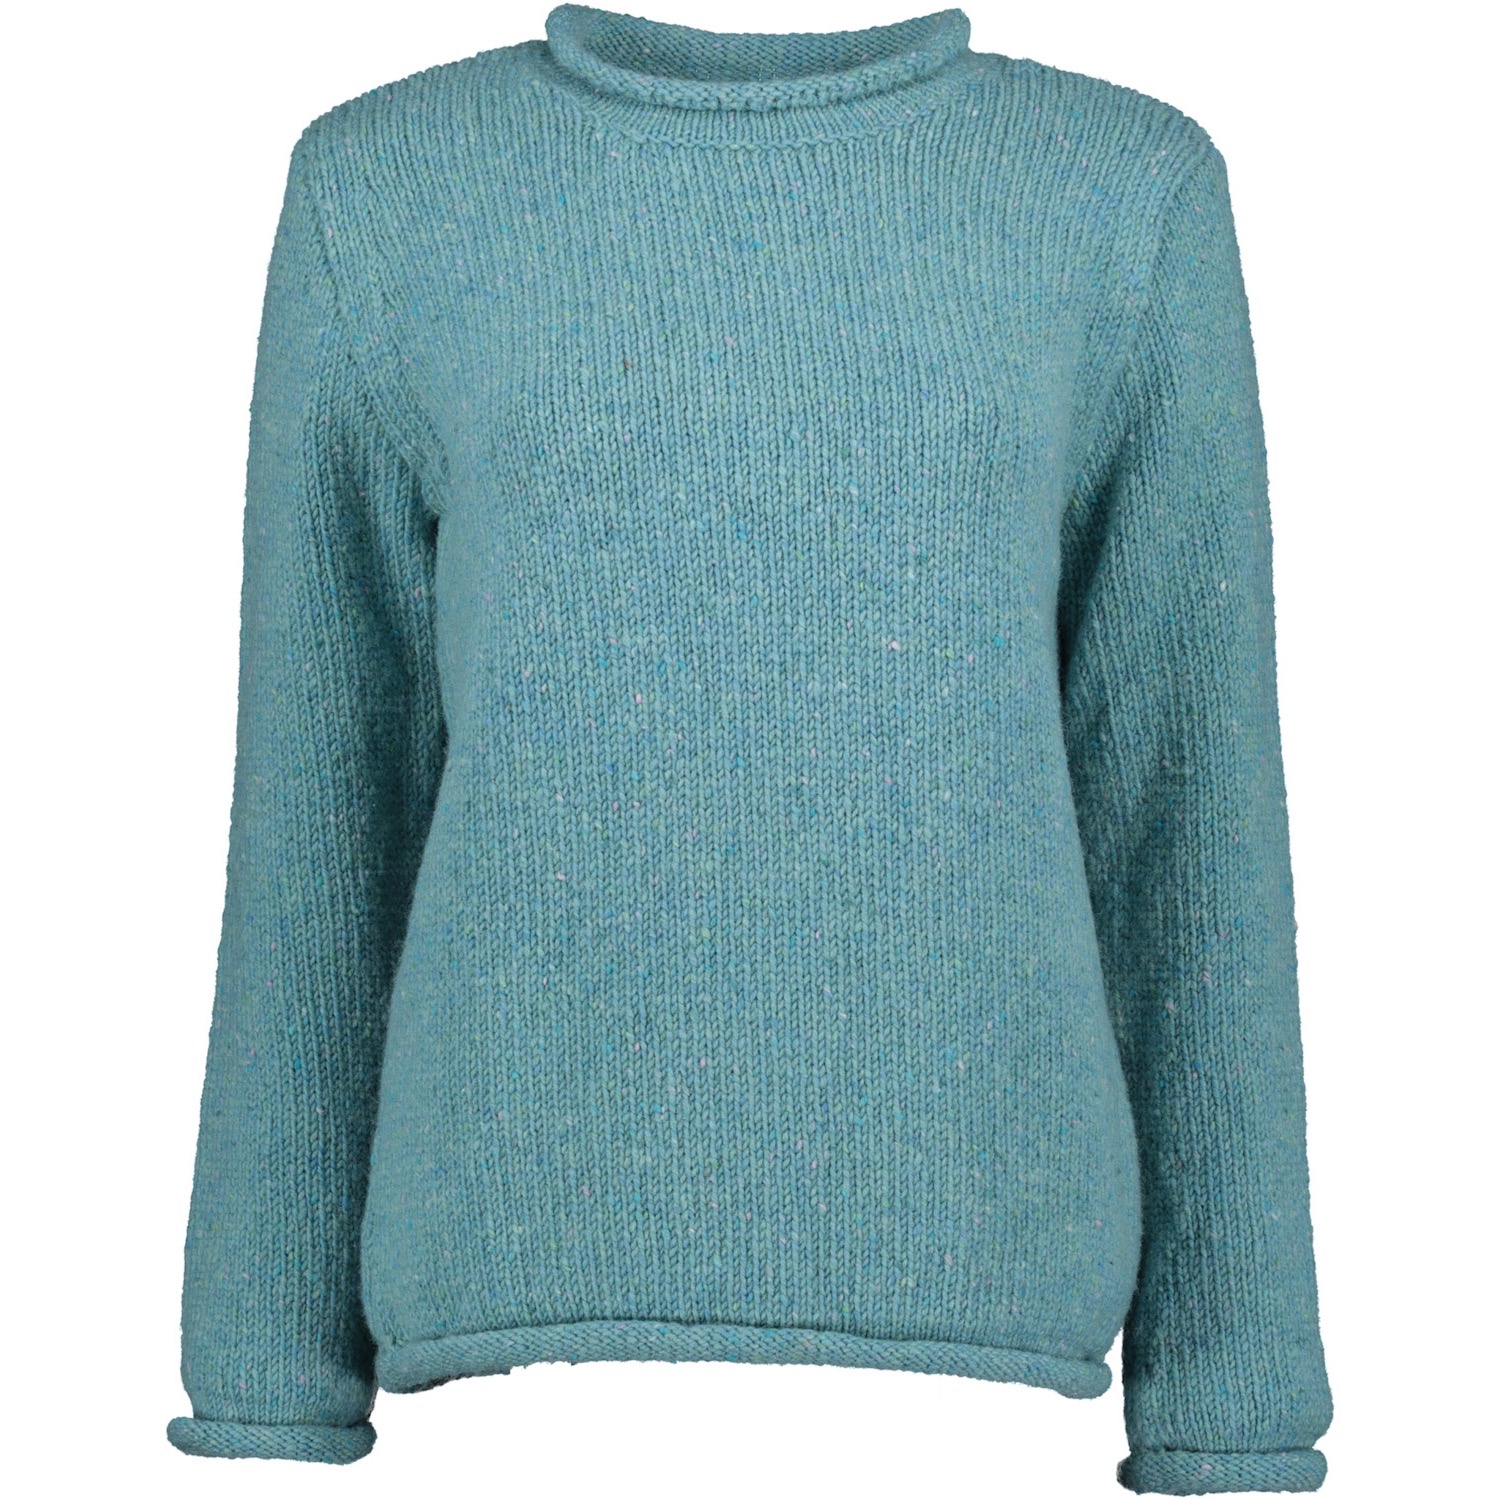 Killaloe Tweed Roll Neck Sweater - Aqua